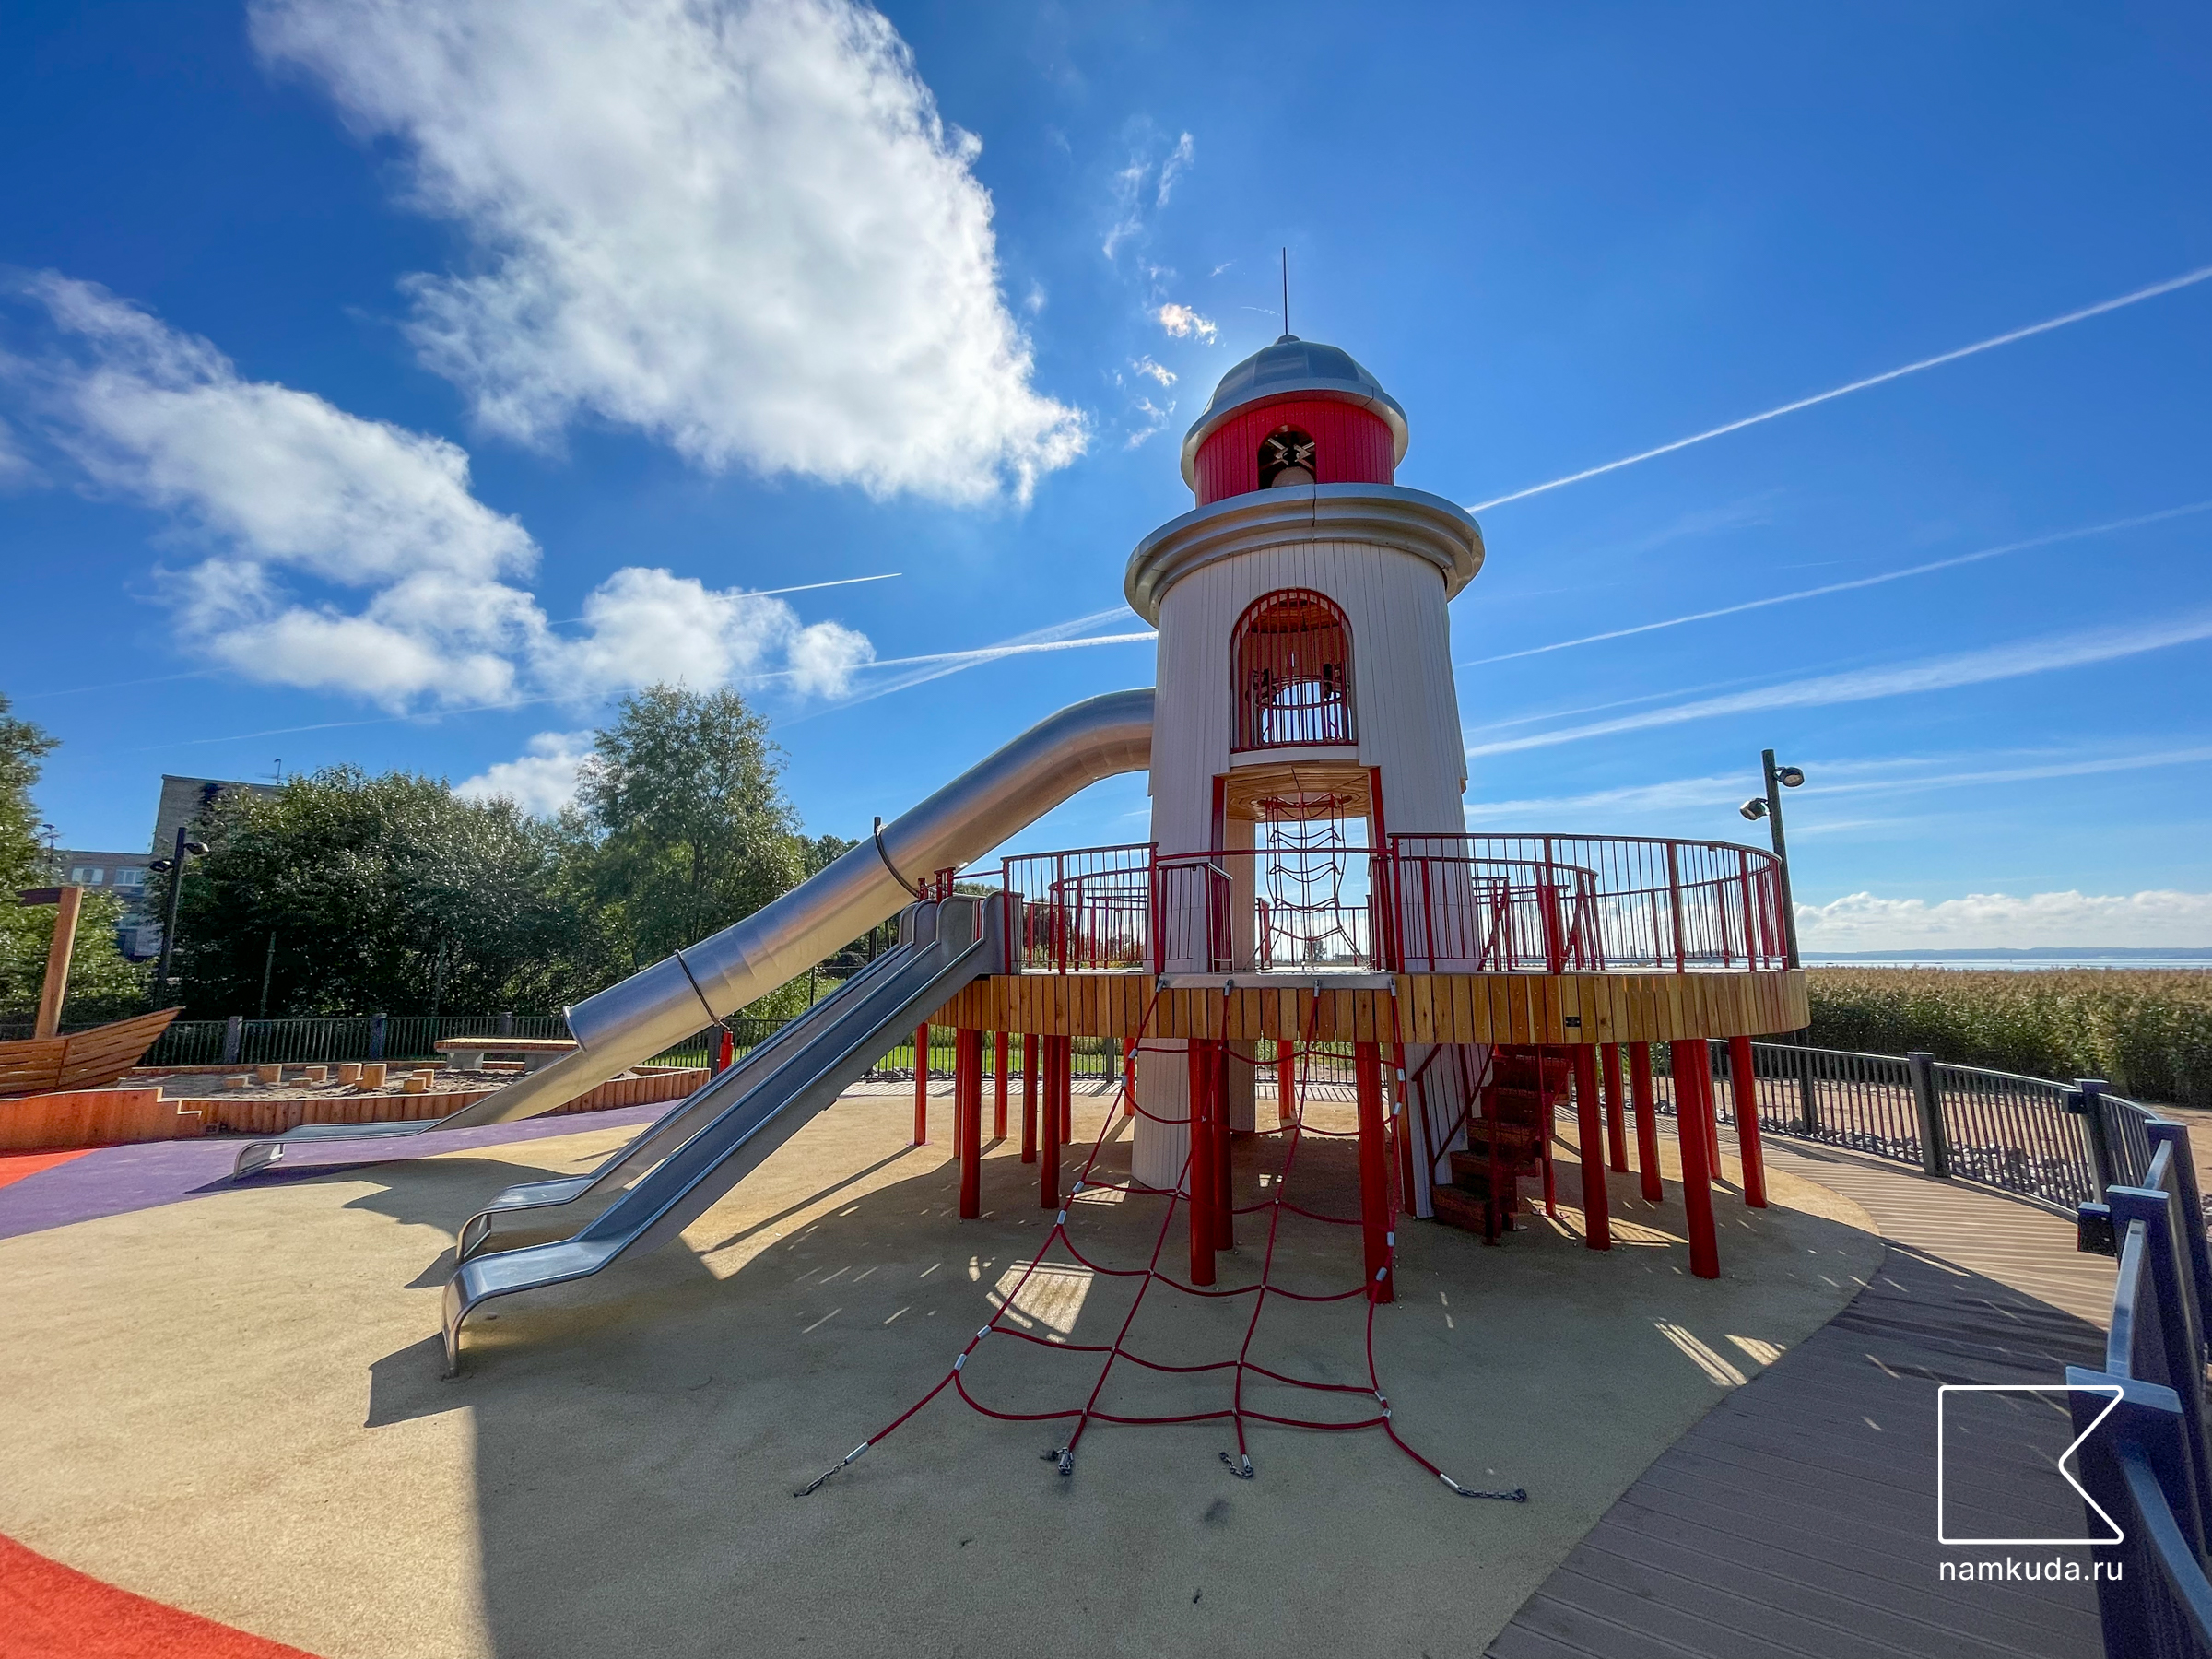 Площадка с маяком — в парке Остров Фортов в Кронштадте 🇷🇺 — Намкуда